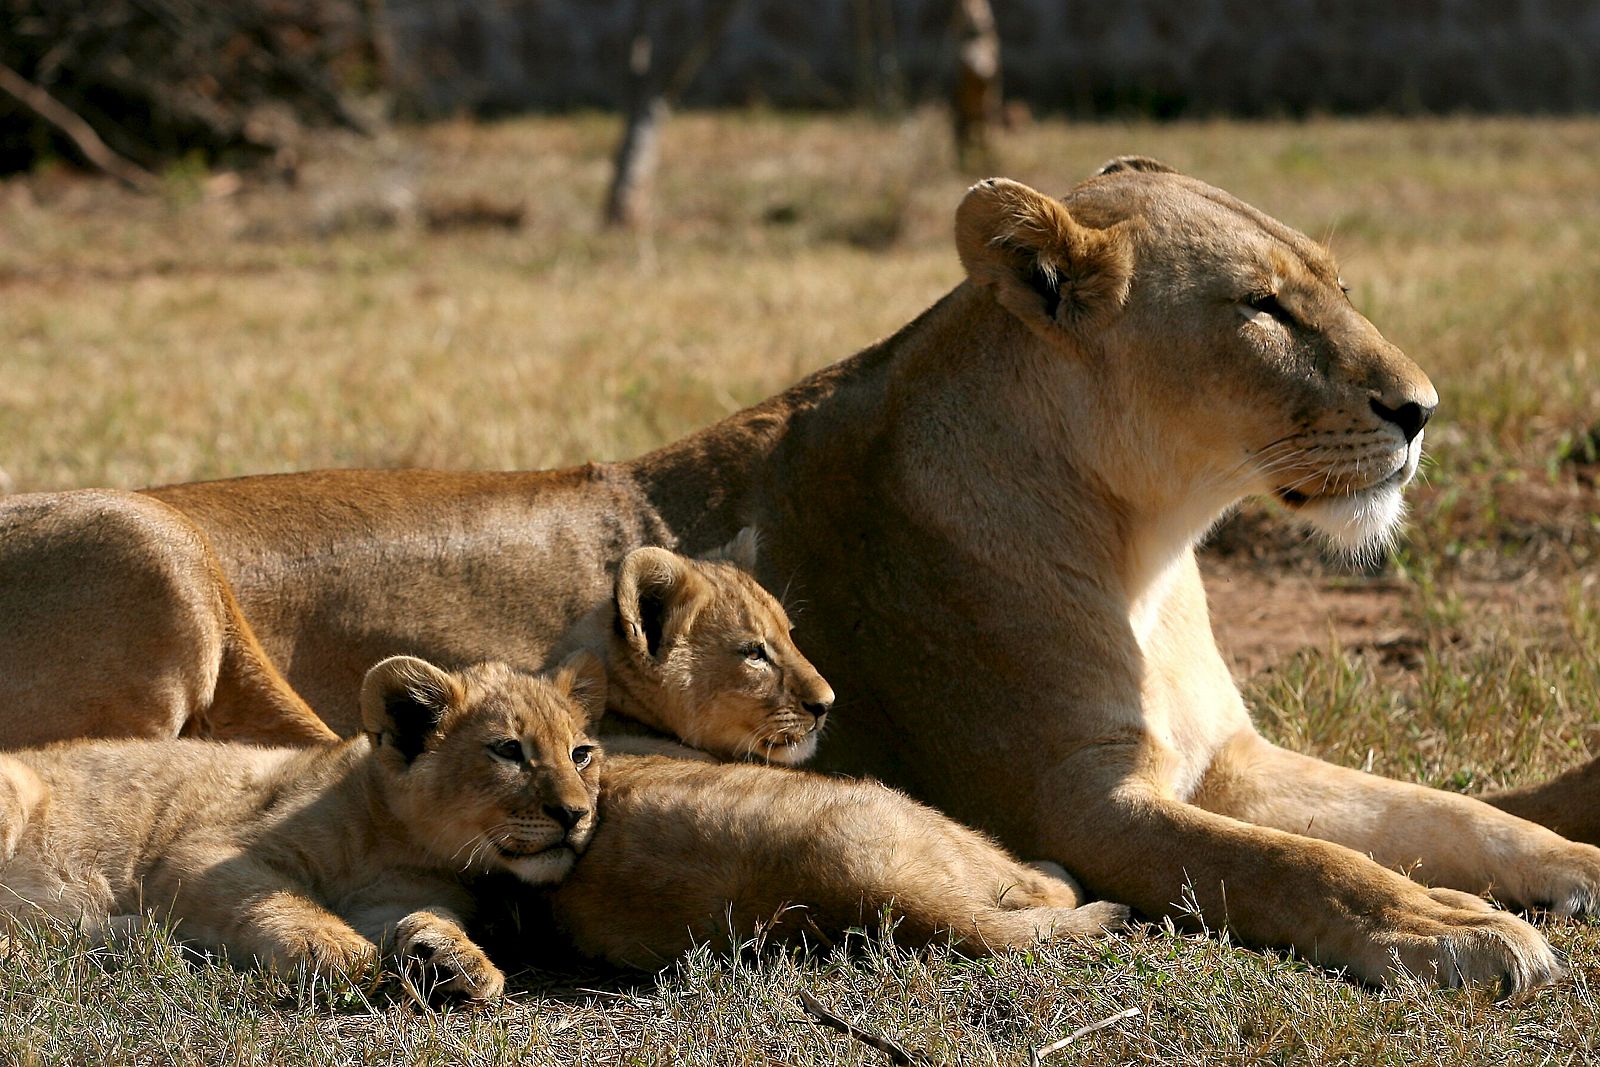 El estudio se ha llevado a cabo en el Parque Nacional de Serengueti, en Tanzania.